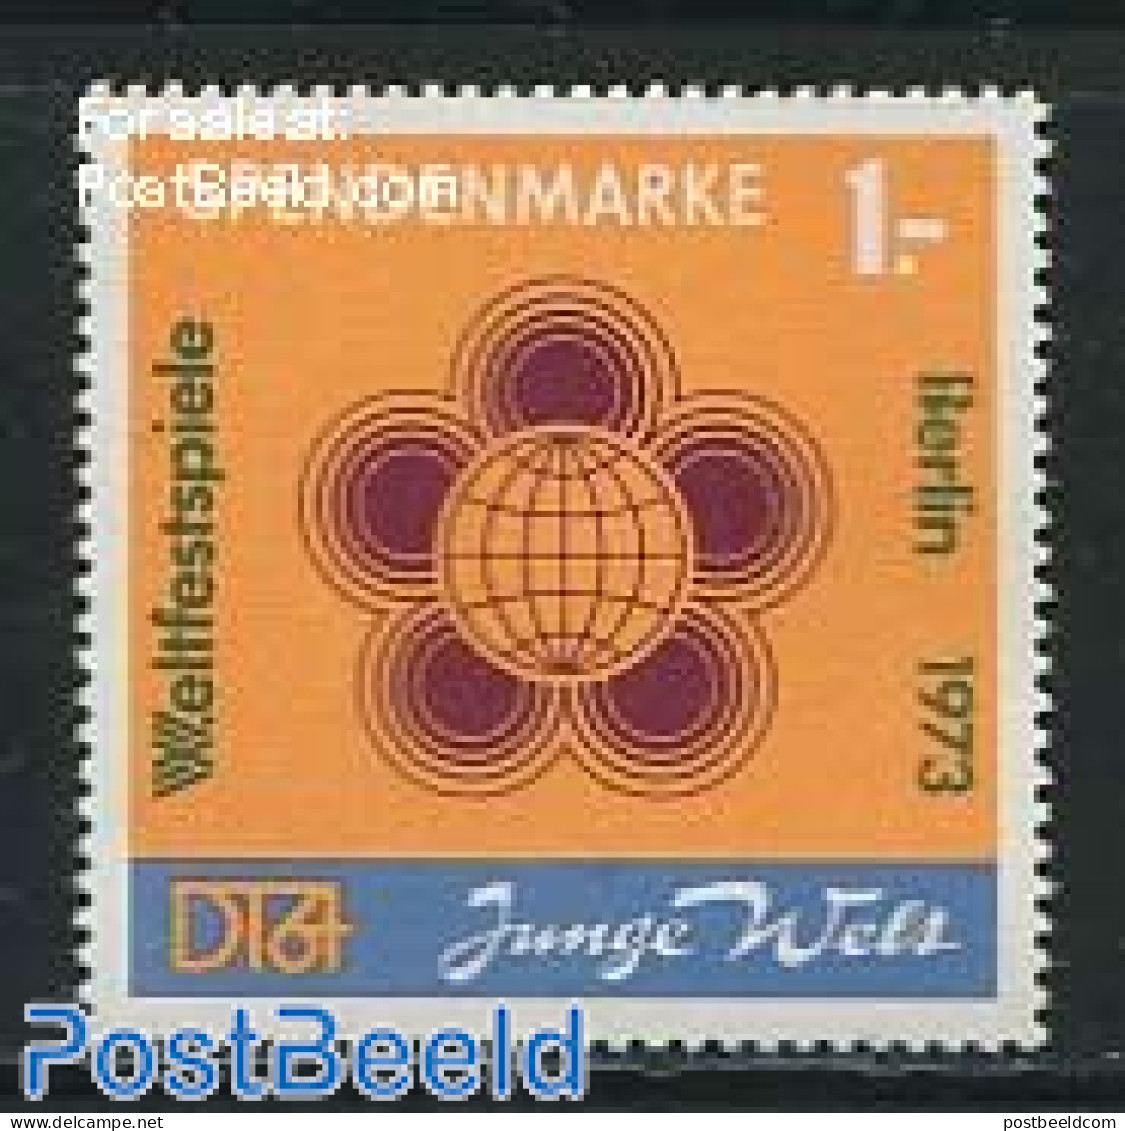 Germany, DDR 1972 Spendenmarke 1v (orange), Mint NH - Ungebraucht